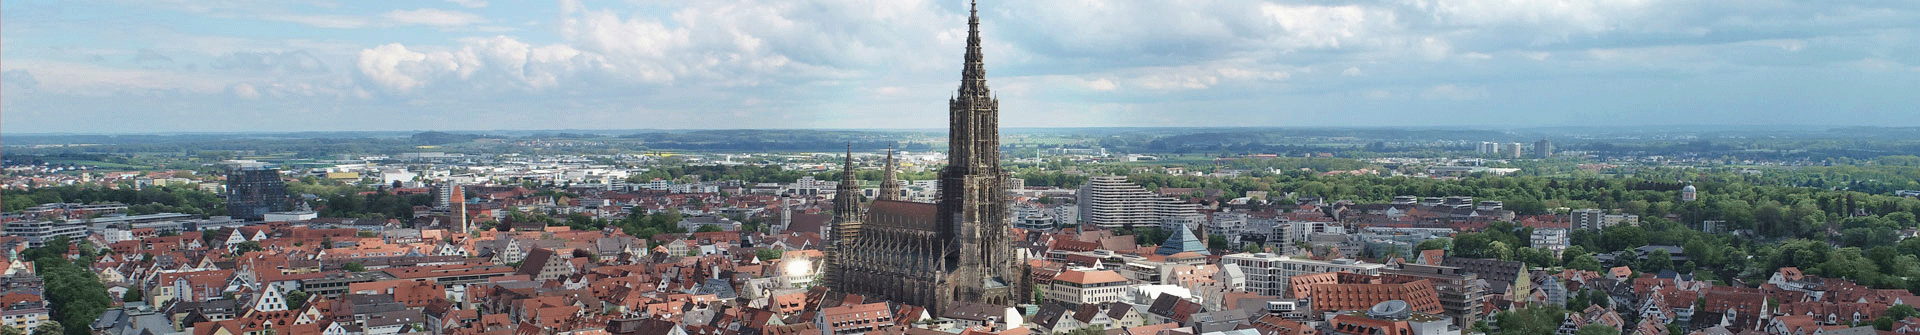 Das Ulmer Münster und die umliegenden Gebäude